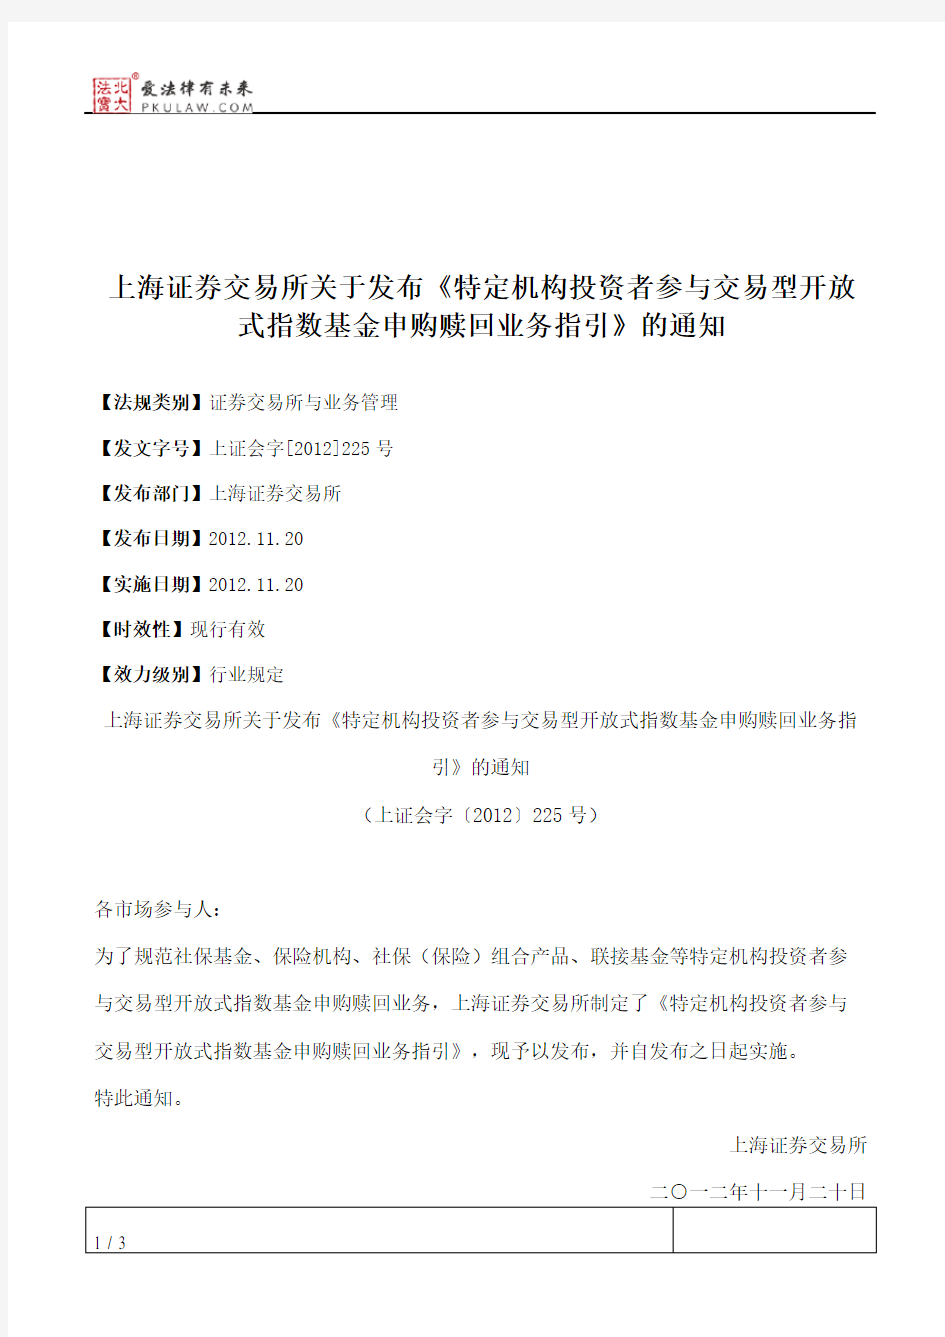 上海证券交易所关于发布《特定机构投资者参与交易型开放式指数基